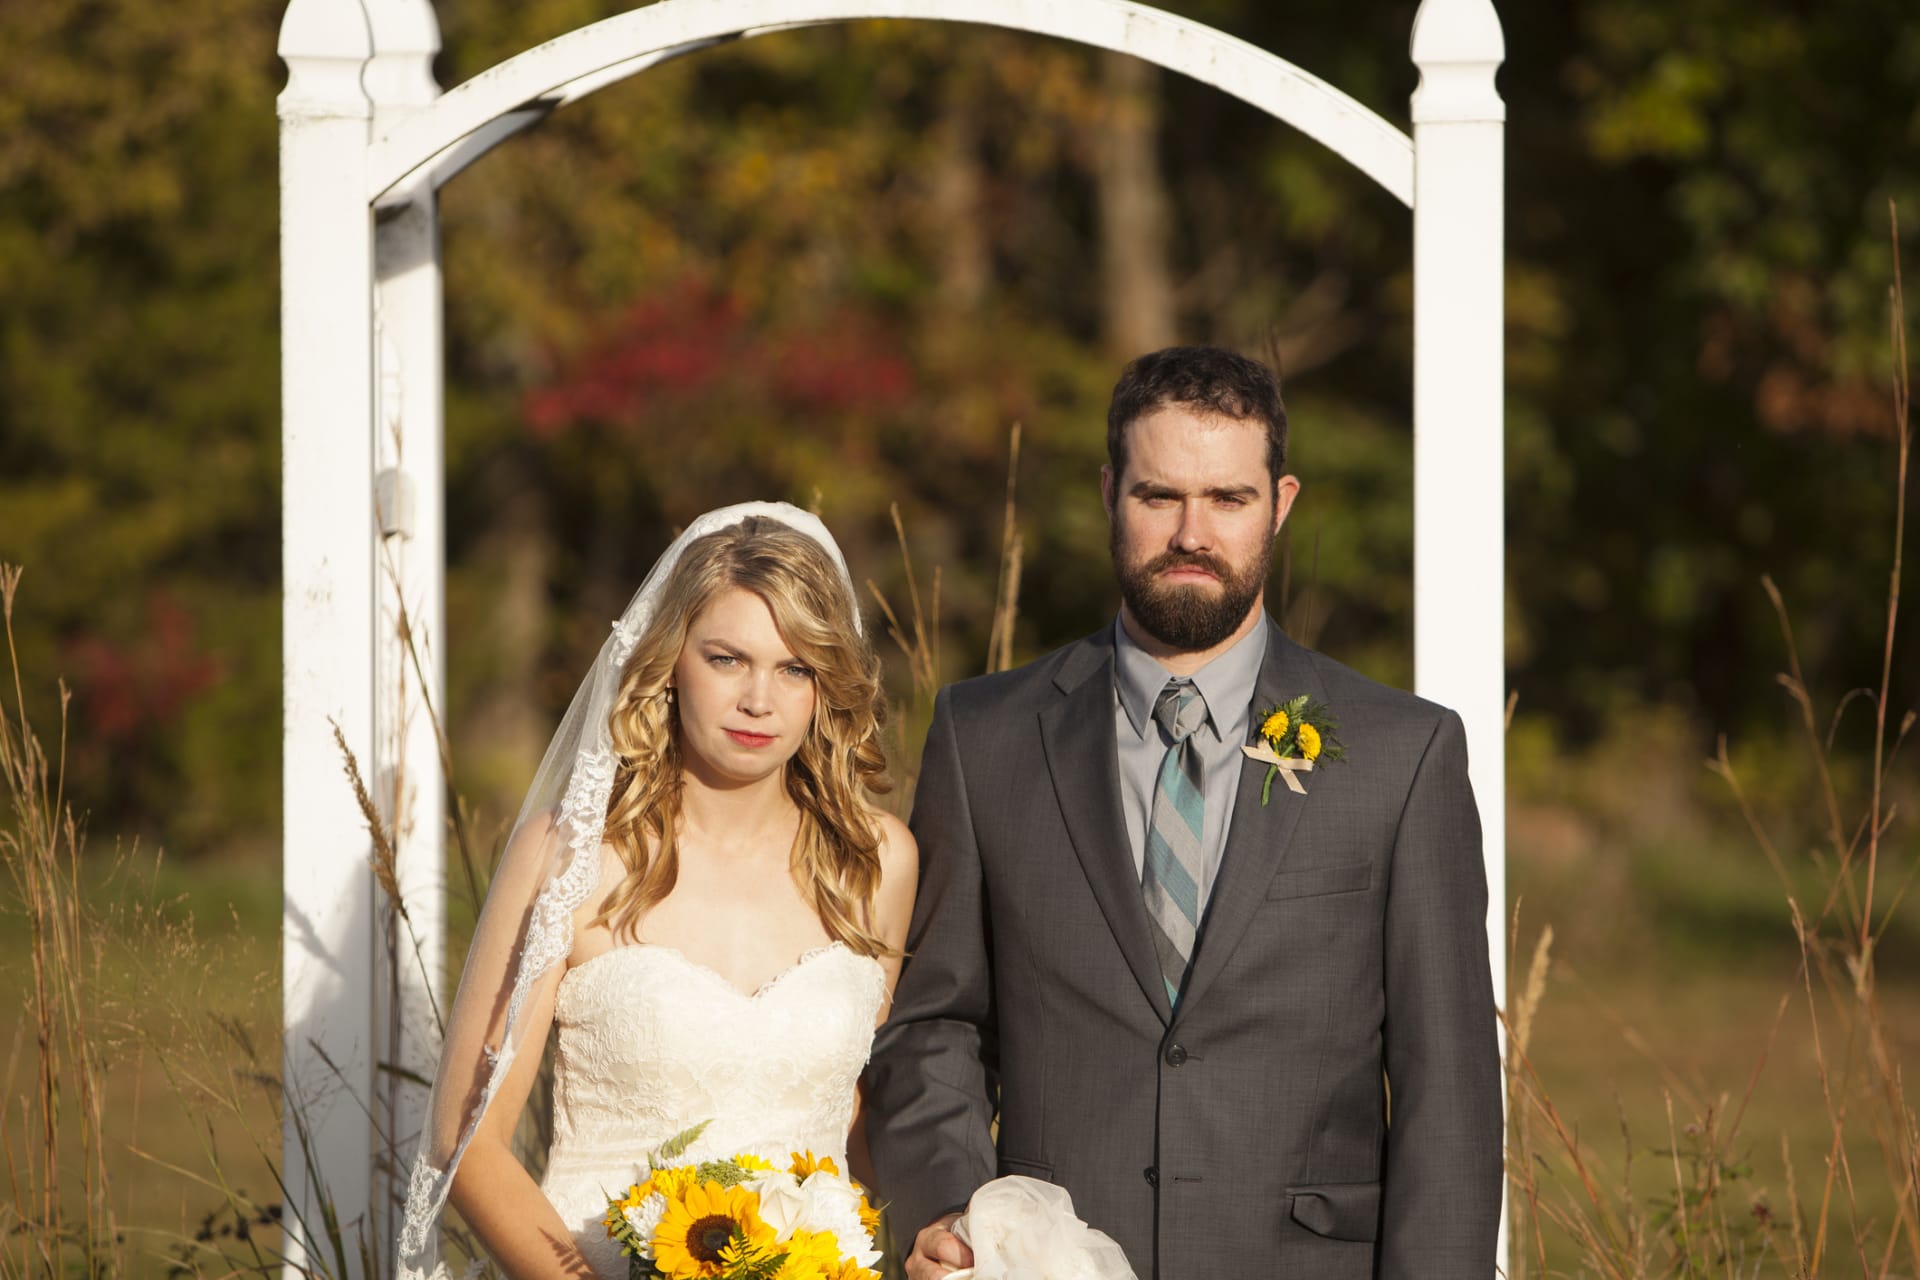 Prázdné pohledy na svatebních fotografiích nevěstí nic dobrého